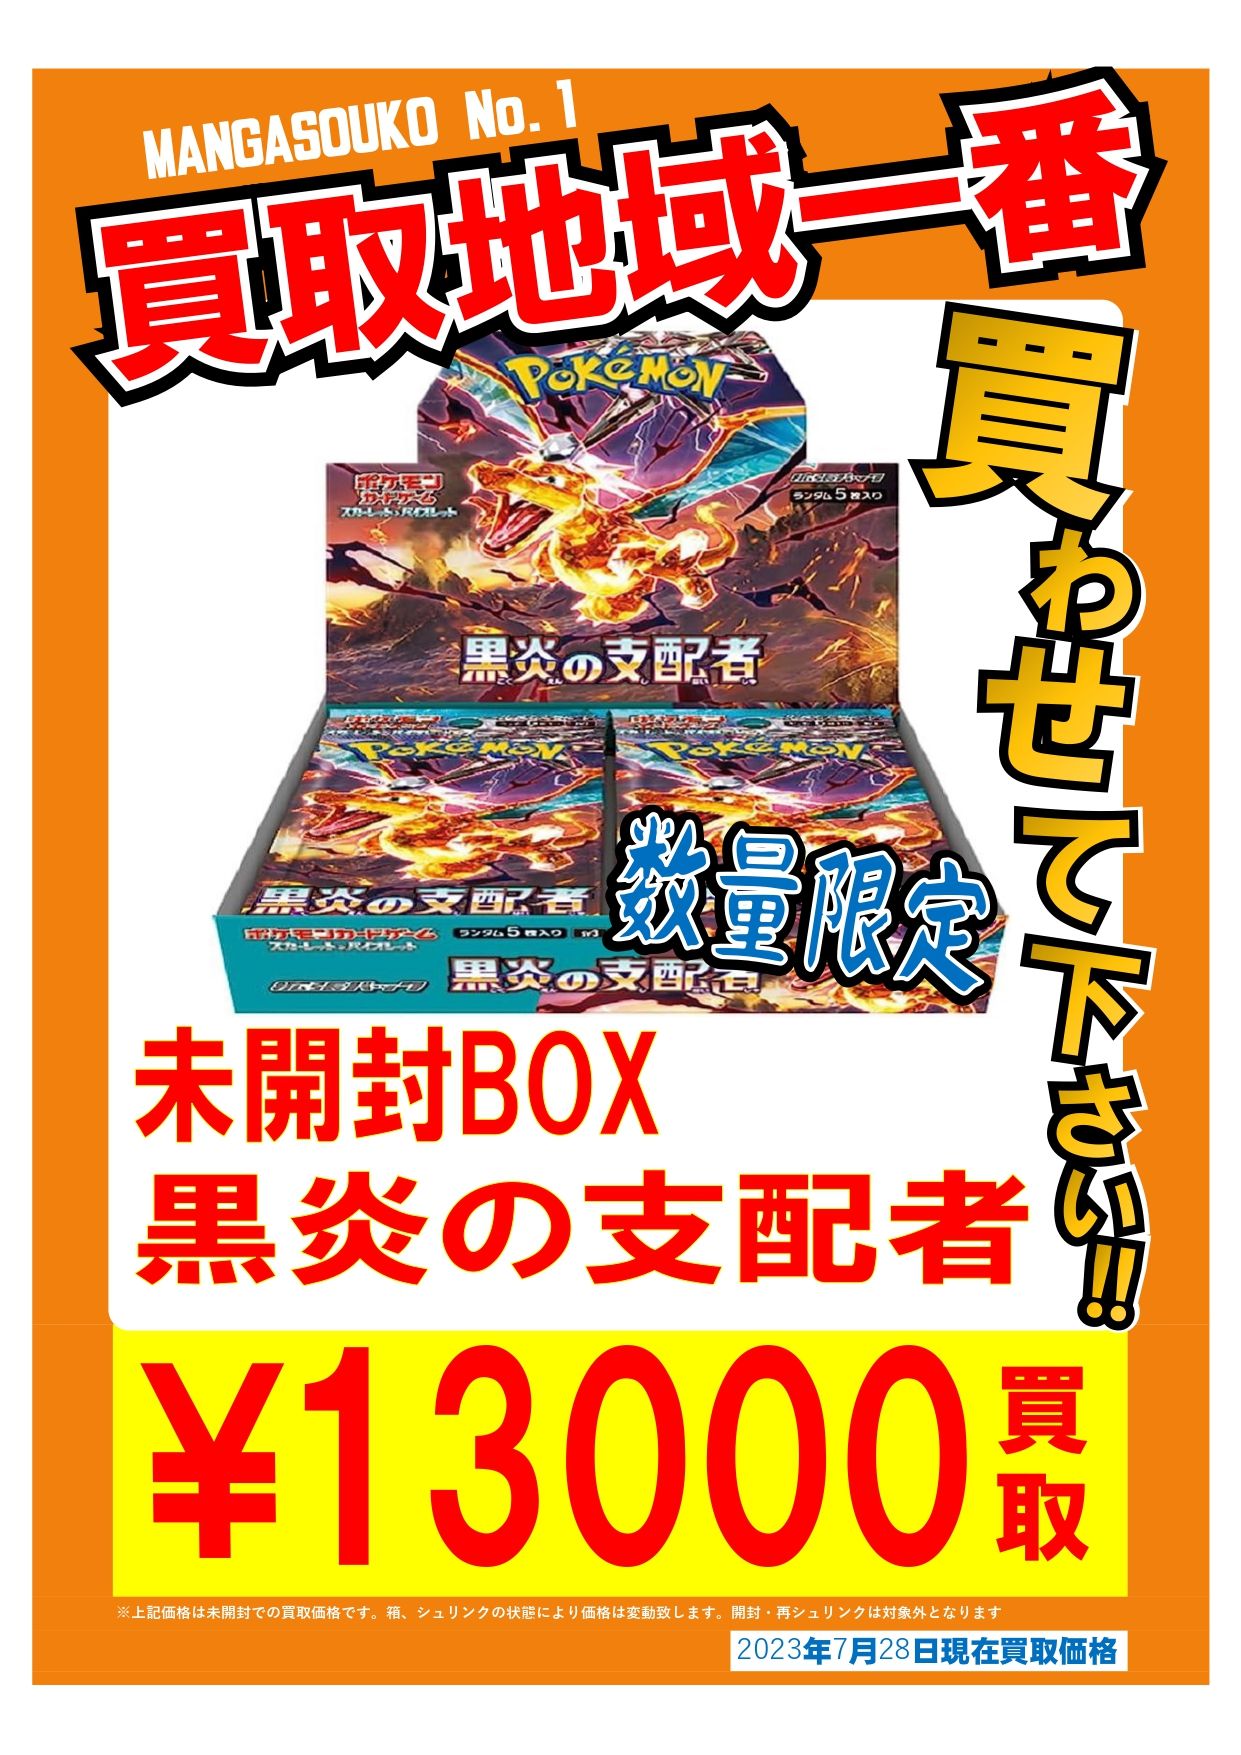 □本日発売❗『黒炎の支配者』シュリンク付き未開封BOX 13,000円買取 